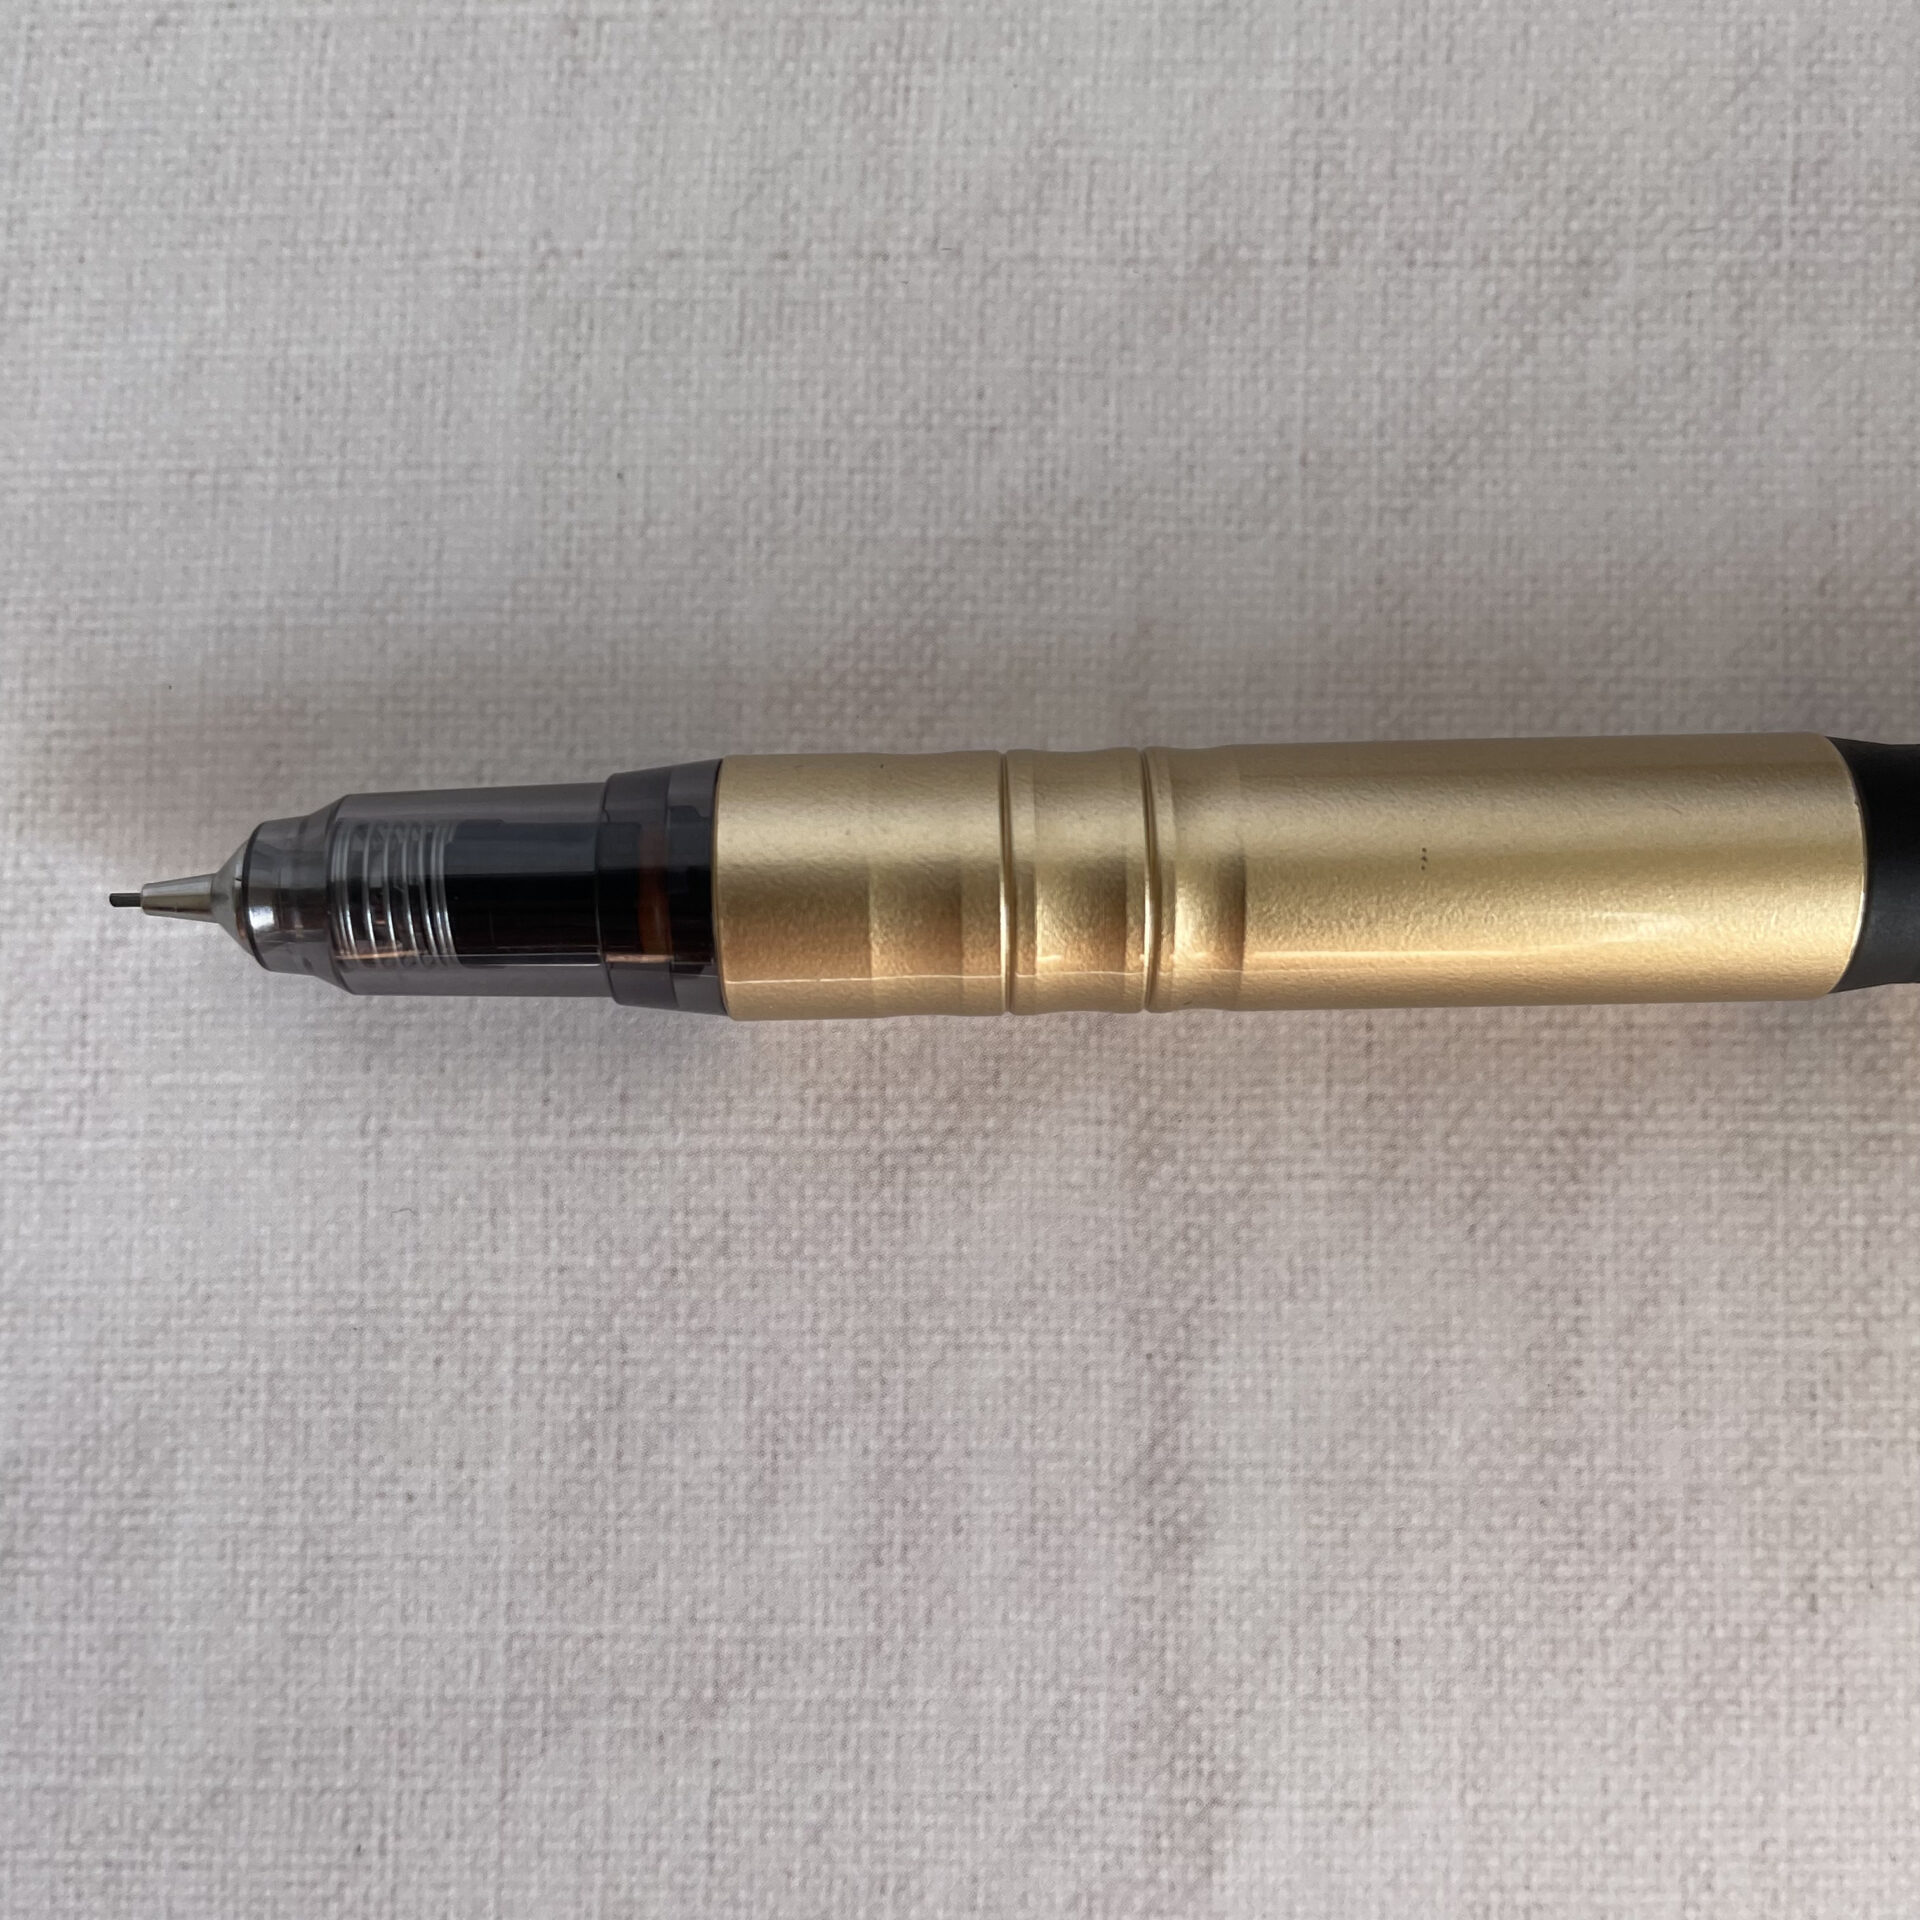 ZEBRA（ゼブラ）の折れないシャープペンシル、デルガード・タイプLxは本体前半分が金属製になっているため低重心で書きやすいのが特徴です。